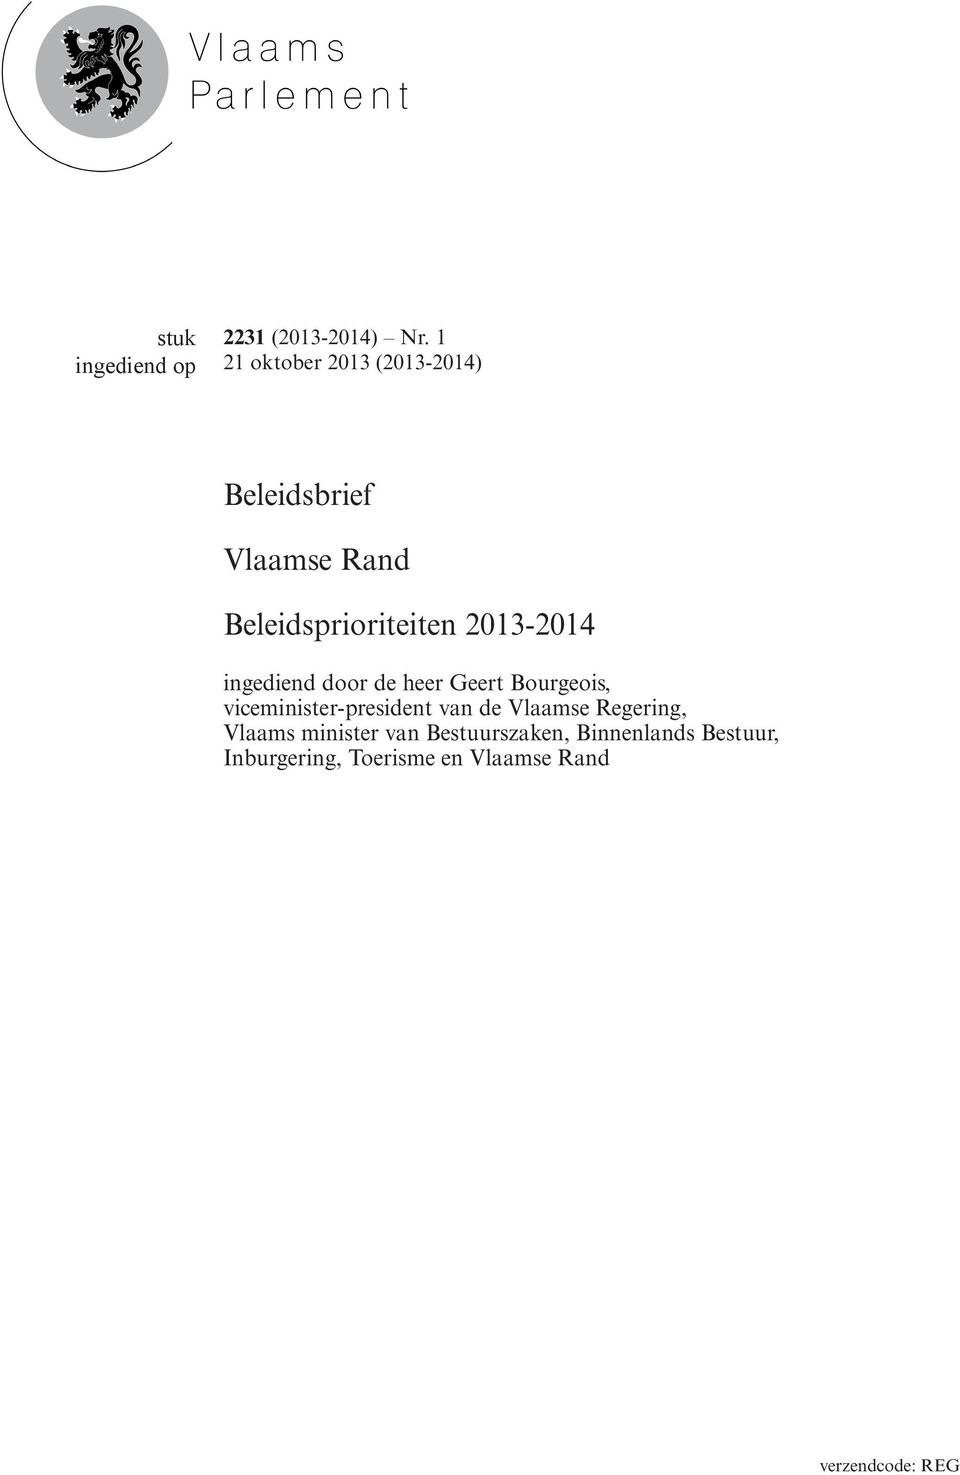 2013-2014 ingediend door de heer Geert Bourgeois, viceminister-president van